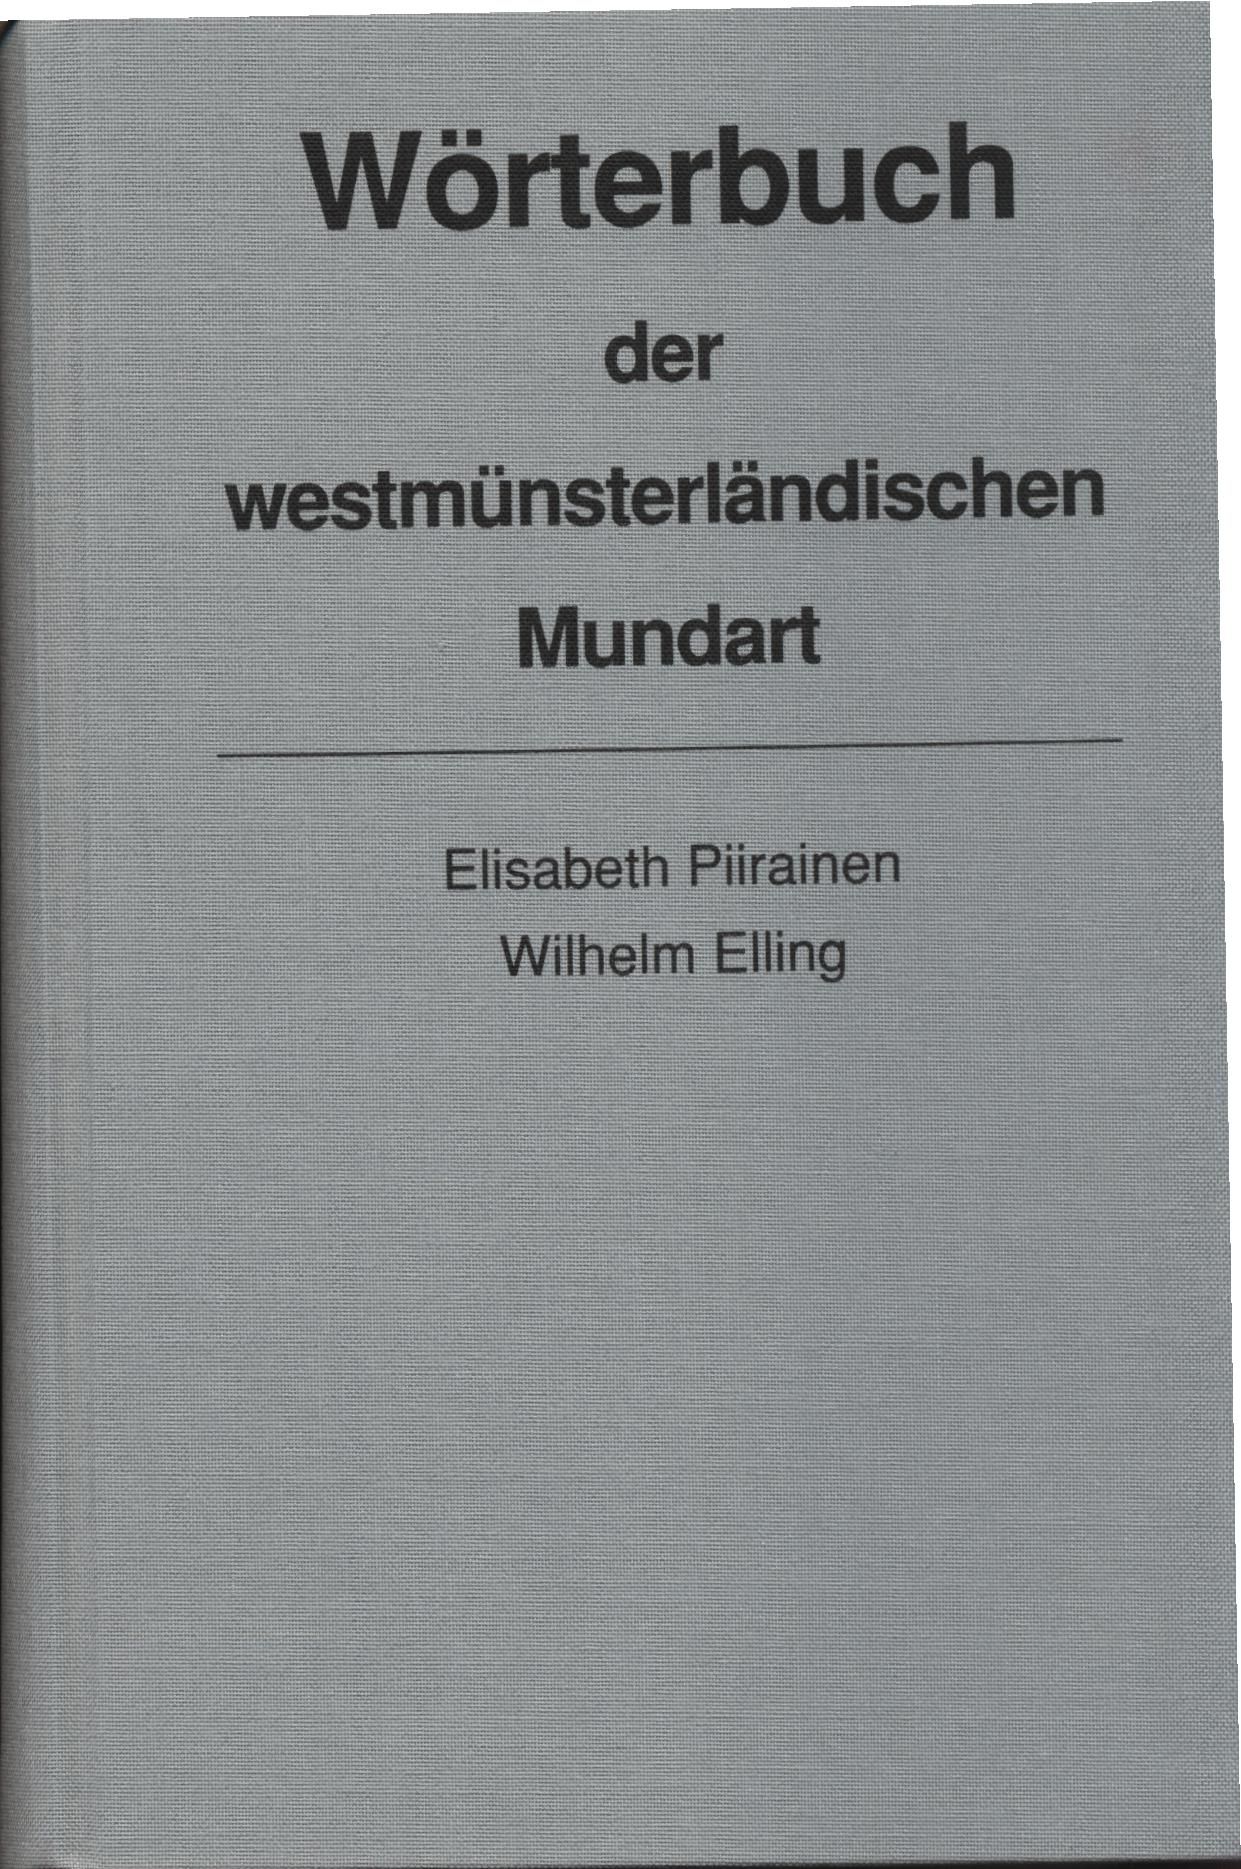 Wörterbuch der westmünsterländischen Mundart. - Sprachen. - Piirainen, Elisabeth.